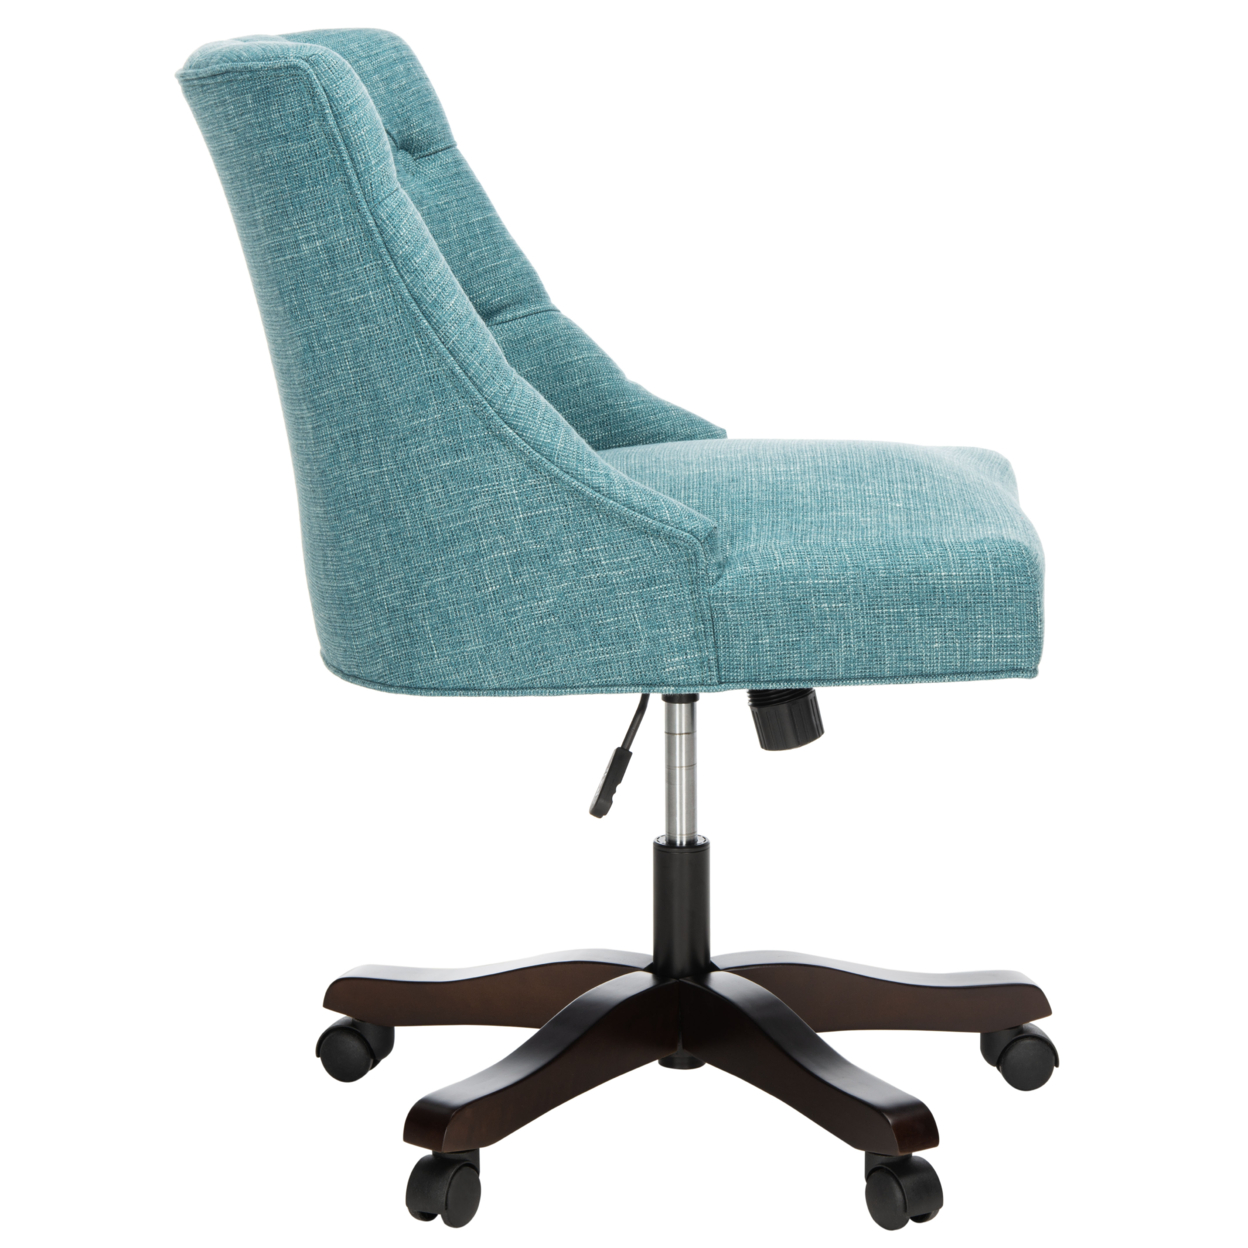 SAFAVIEH Soho Tufted Linen Swivel Desk Chair Light Blue